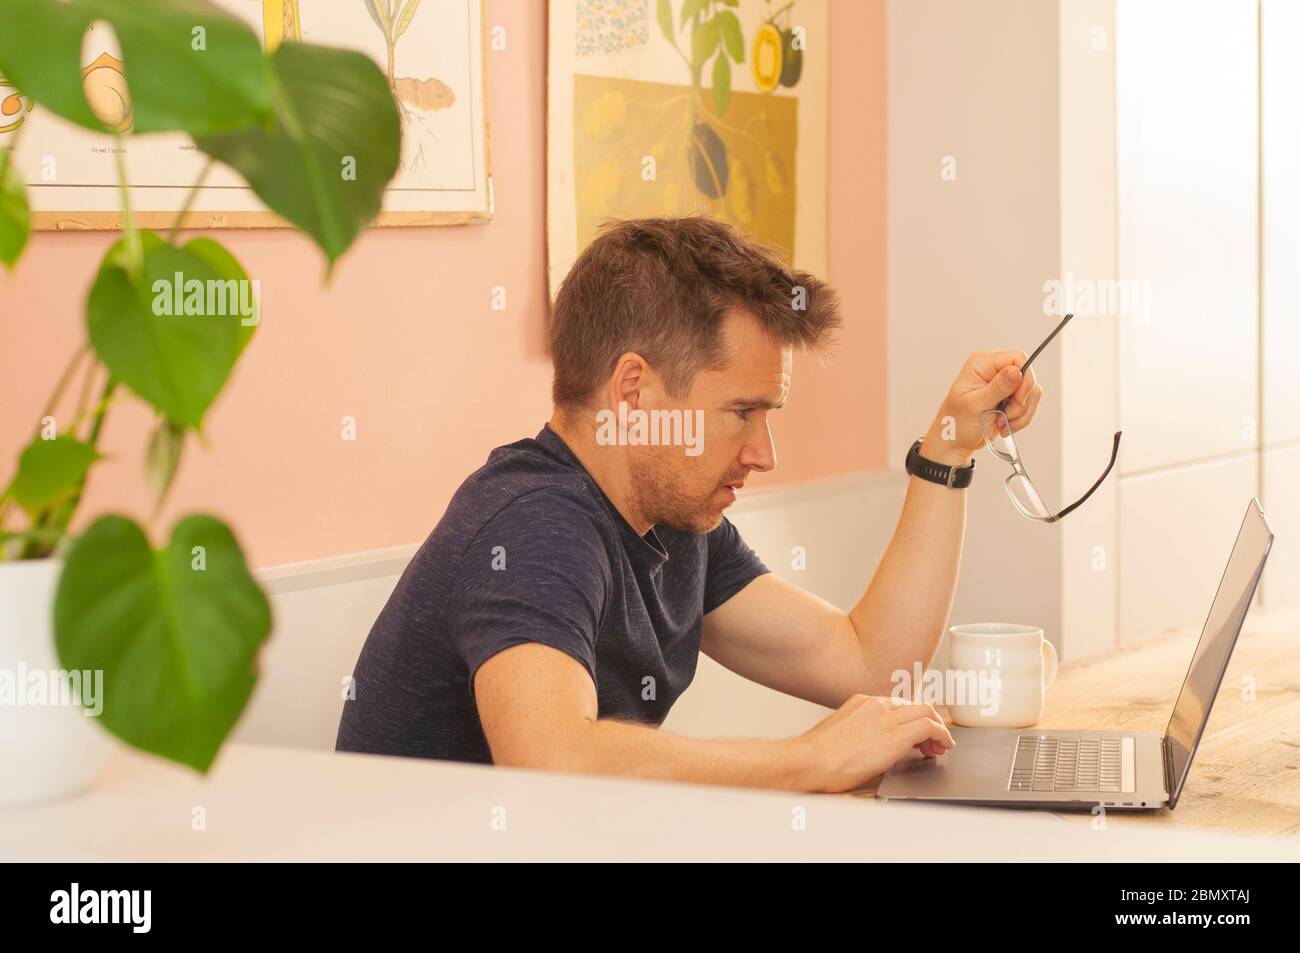 Ritratto di un uomo che lavora da casa su un computer portatile durante il blocco del coronavirus, tenendo gli occhiali. Formato orizzontale. Foto Stock